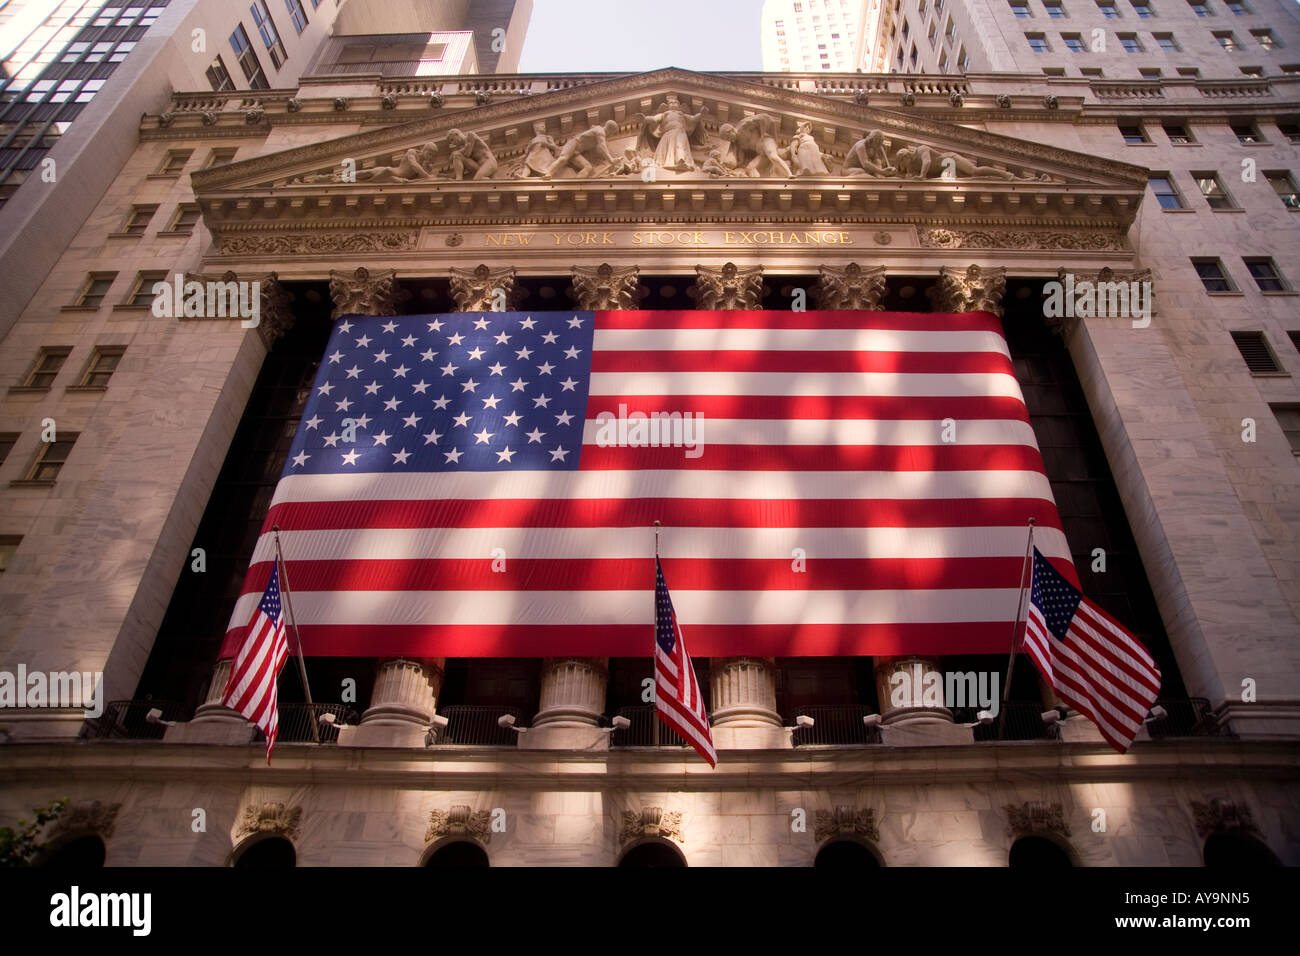 Eine riesige amerikanische Fahne schmückt die neoklassizistische Fassade der Börse an der Broad Street in Manhattan New York City Stockfoto